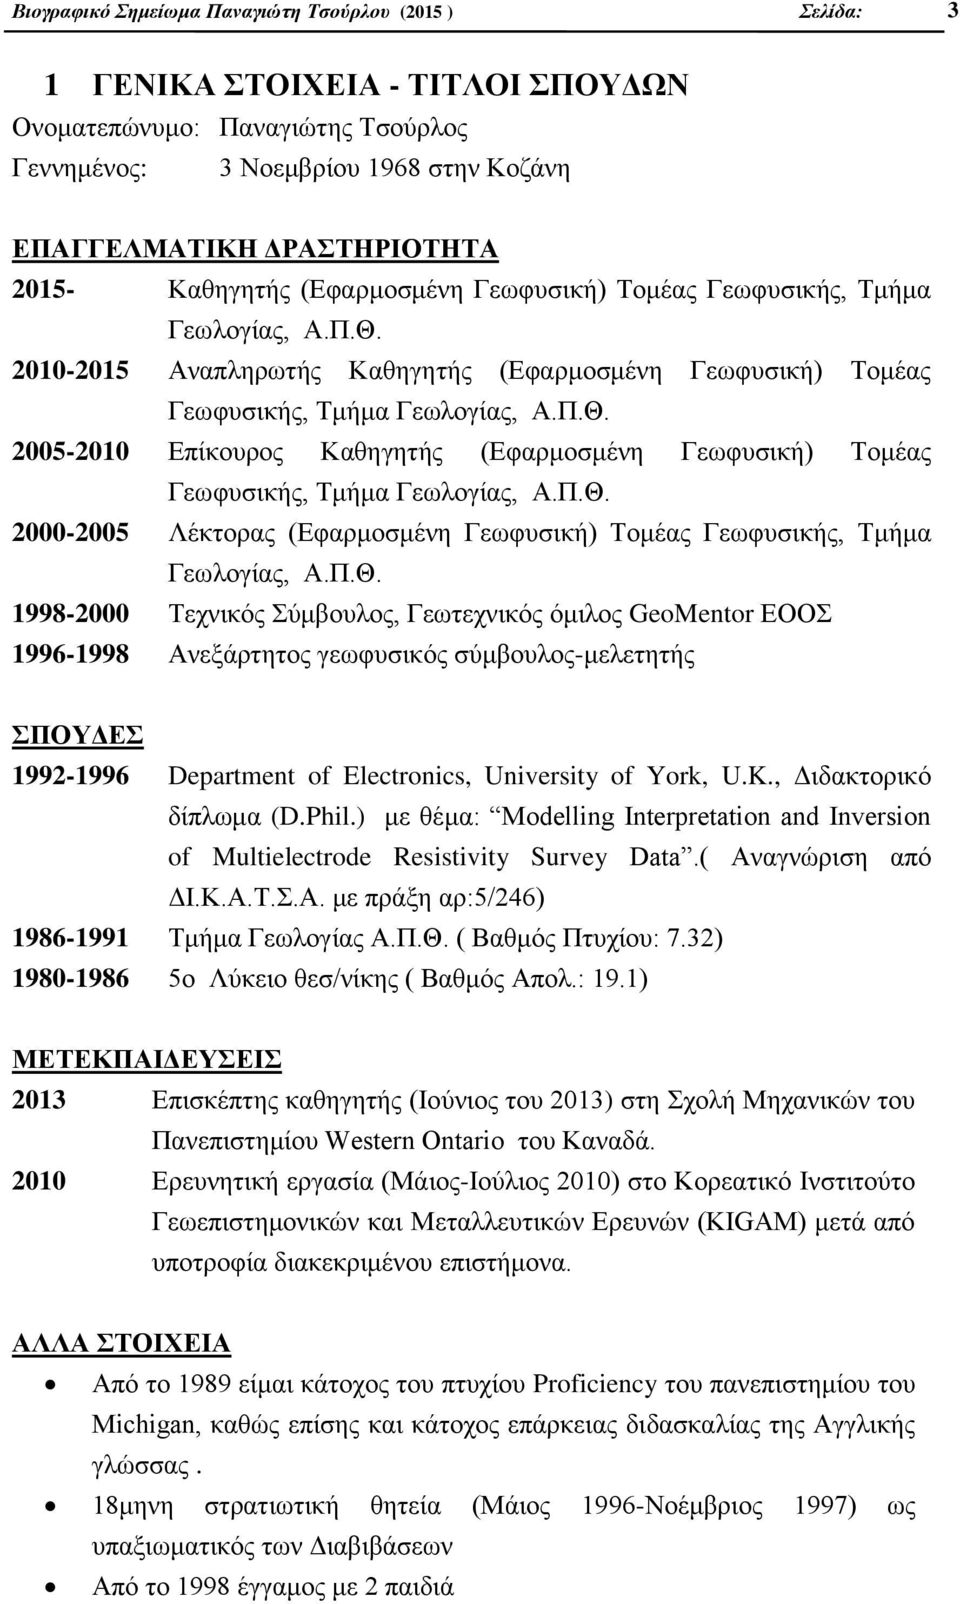 Π.Θ. 2000-2005 Λέκτορας (Εφαρμοσμένη Γεωφυσική) Τομέας Γεωφυσικής, Τμήμα Γεωλογίας, Α.Π.Θ. 1998-2000 Τεχνικός Σύμβουλος, Γεωτεχνικός όμιλος GeoMentor ΕΟΟΣ 1996-1998 Ανεξάρτητος γεωφυσικός σύμβουλος-μελετητής ΣΠΟΥΔΕΣ 1992-1996 Department of Electronics, University of York, U.